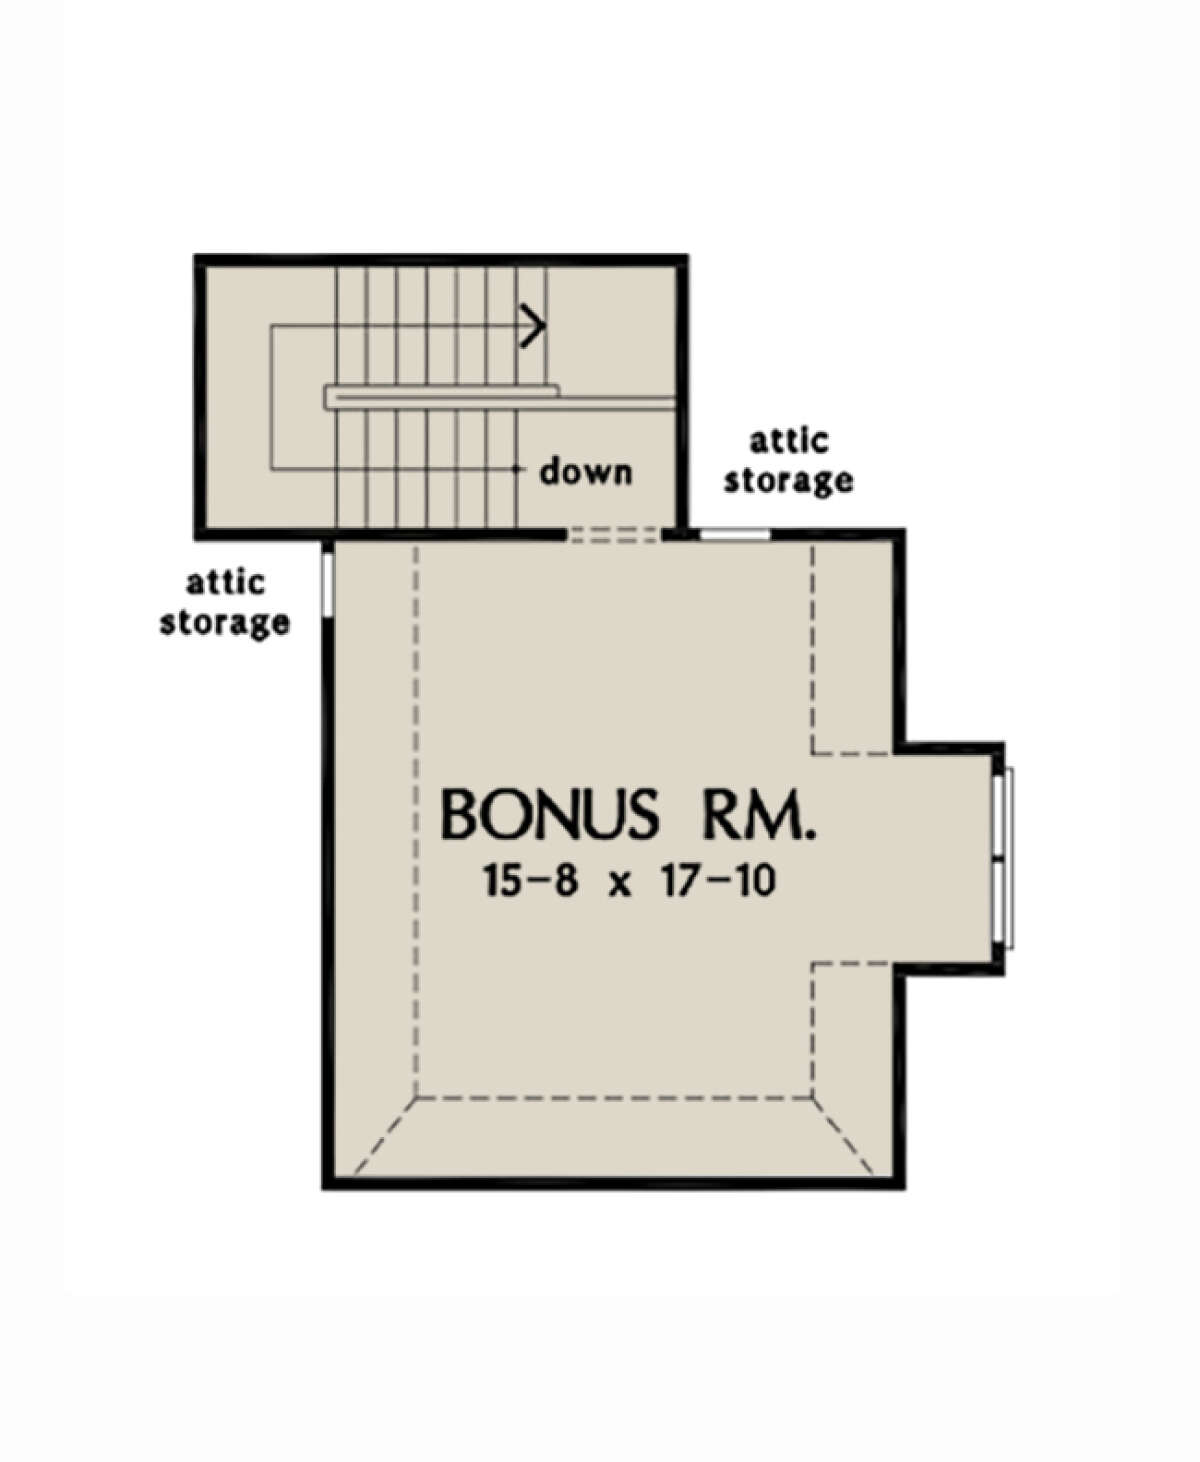 Bonus Room for House Plan #2865-00211